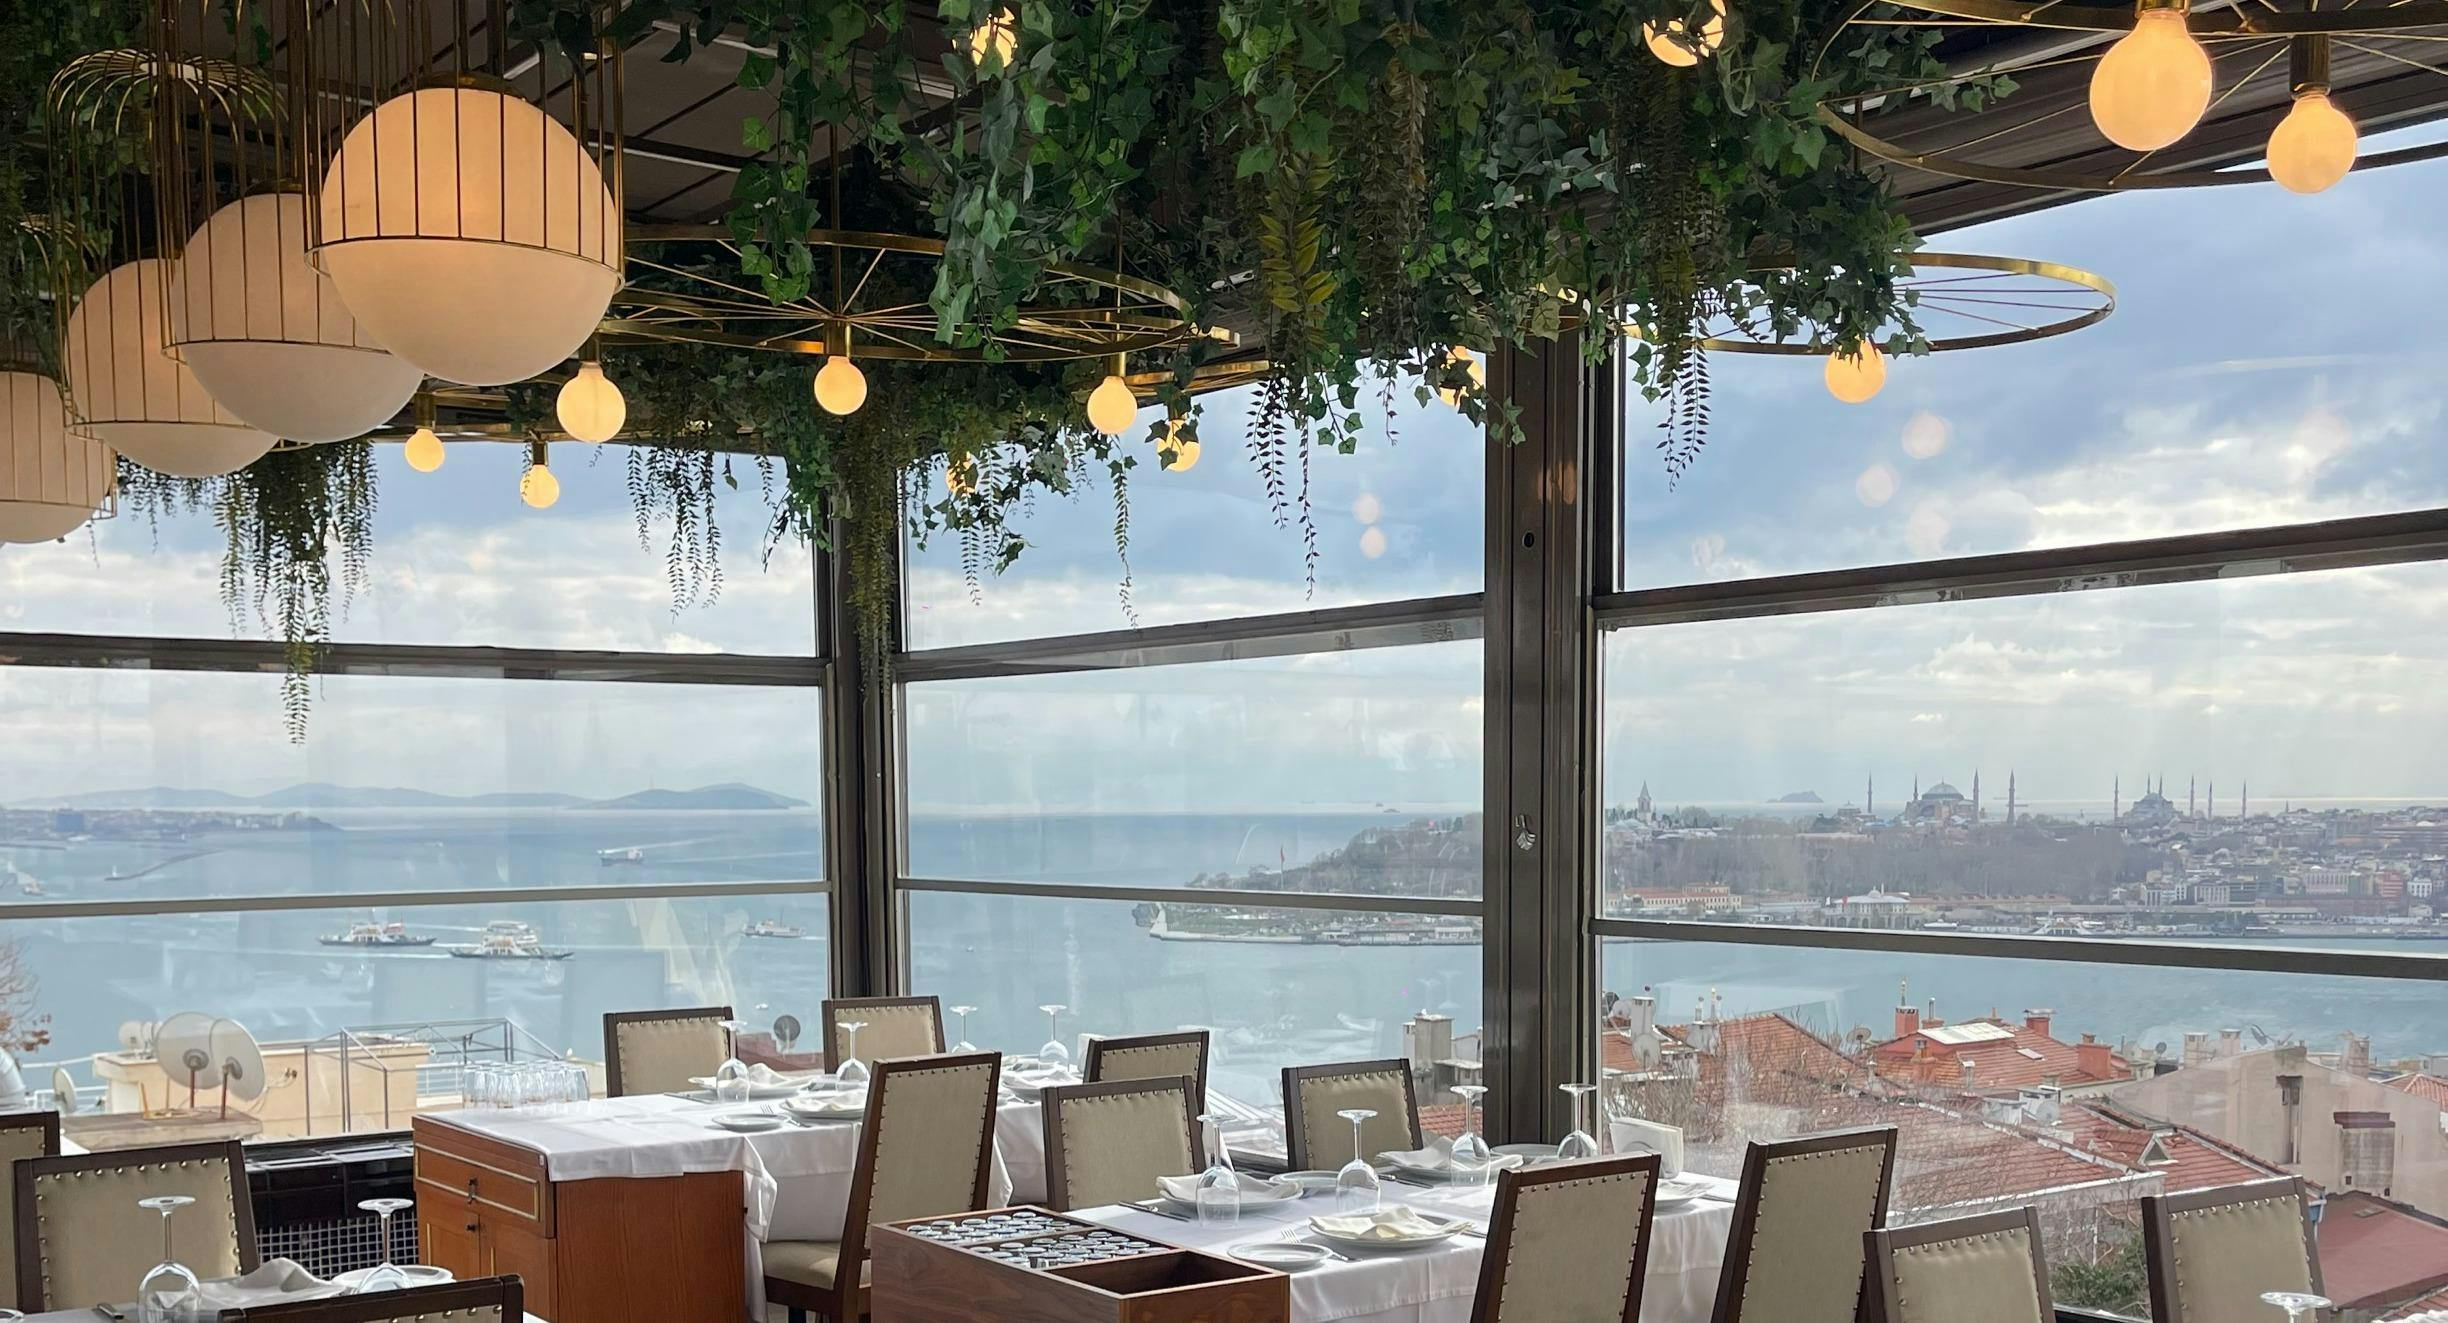 Beyoğlu, İstanbul şehrindeki Sur Balık Cihangir restoranının fotoğrafı